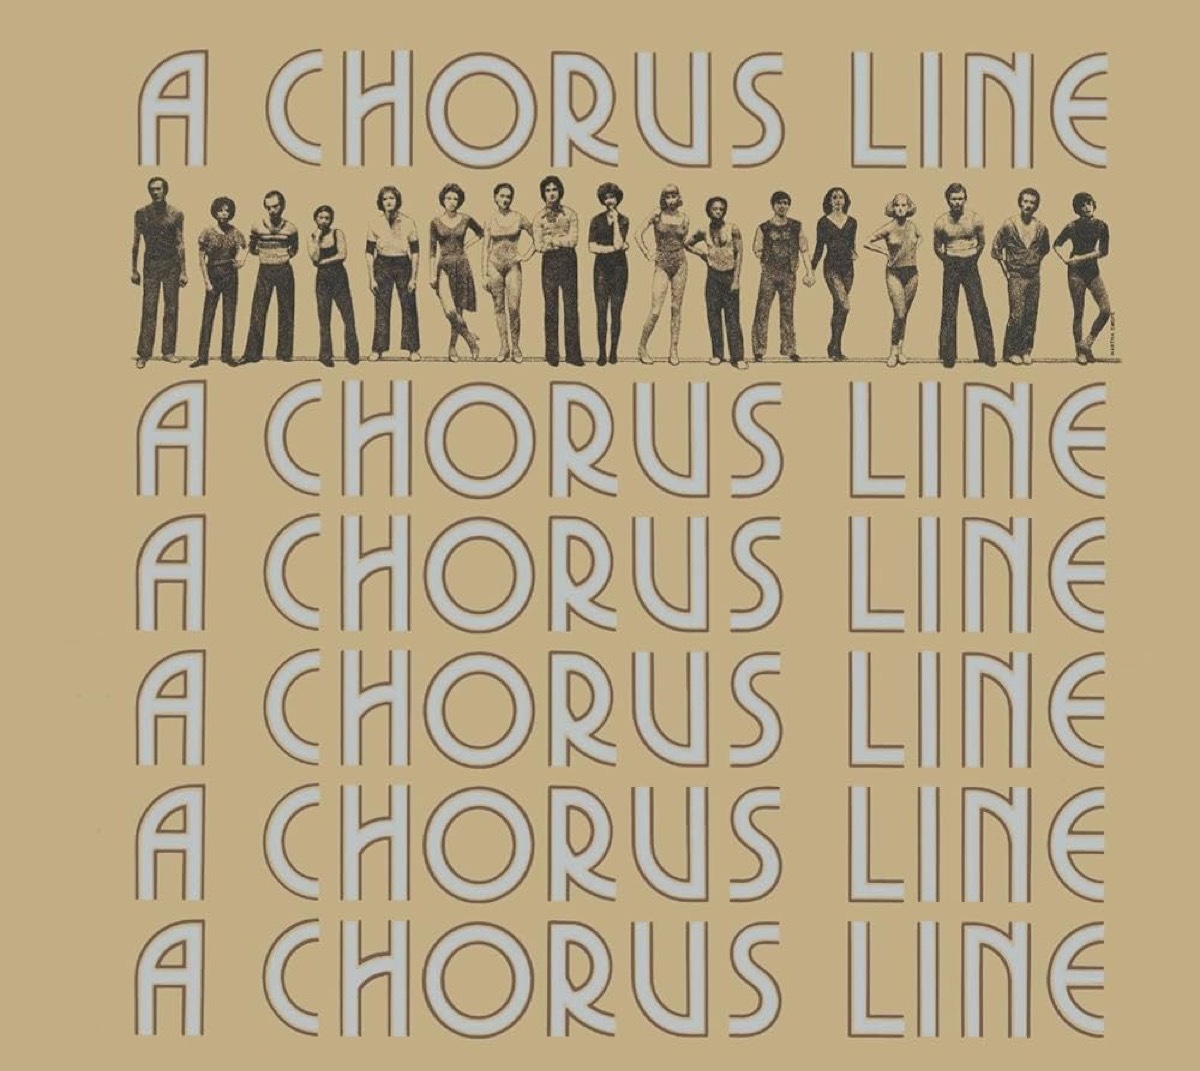 A Chorus Line cast recording